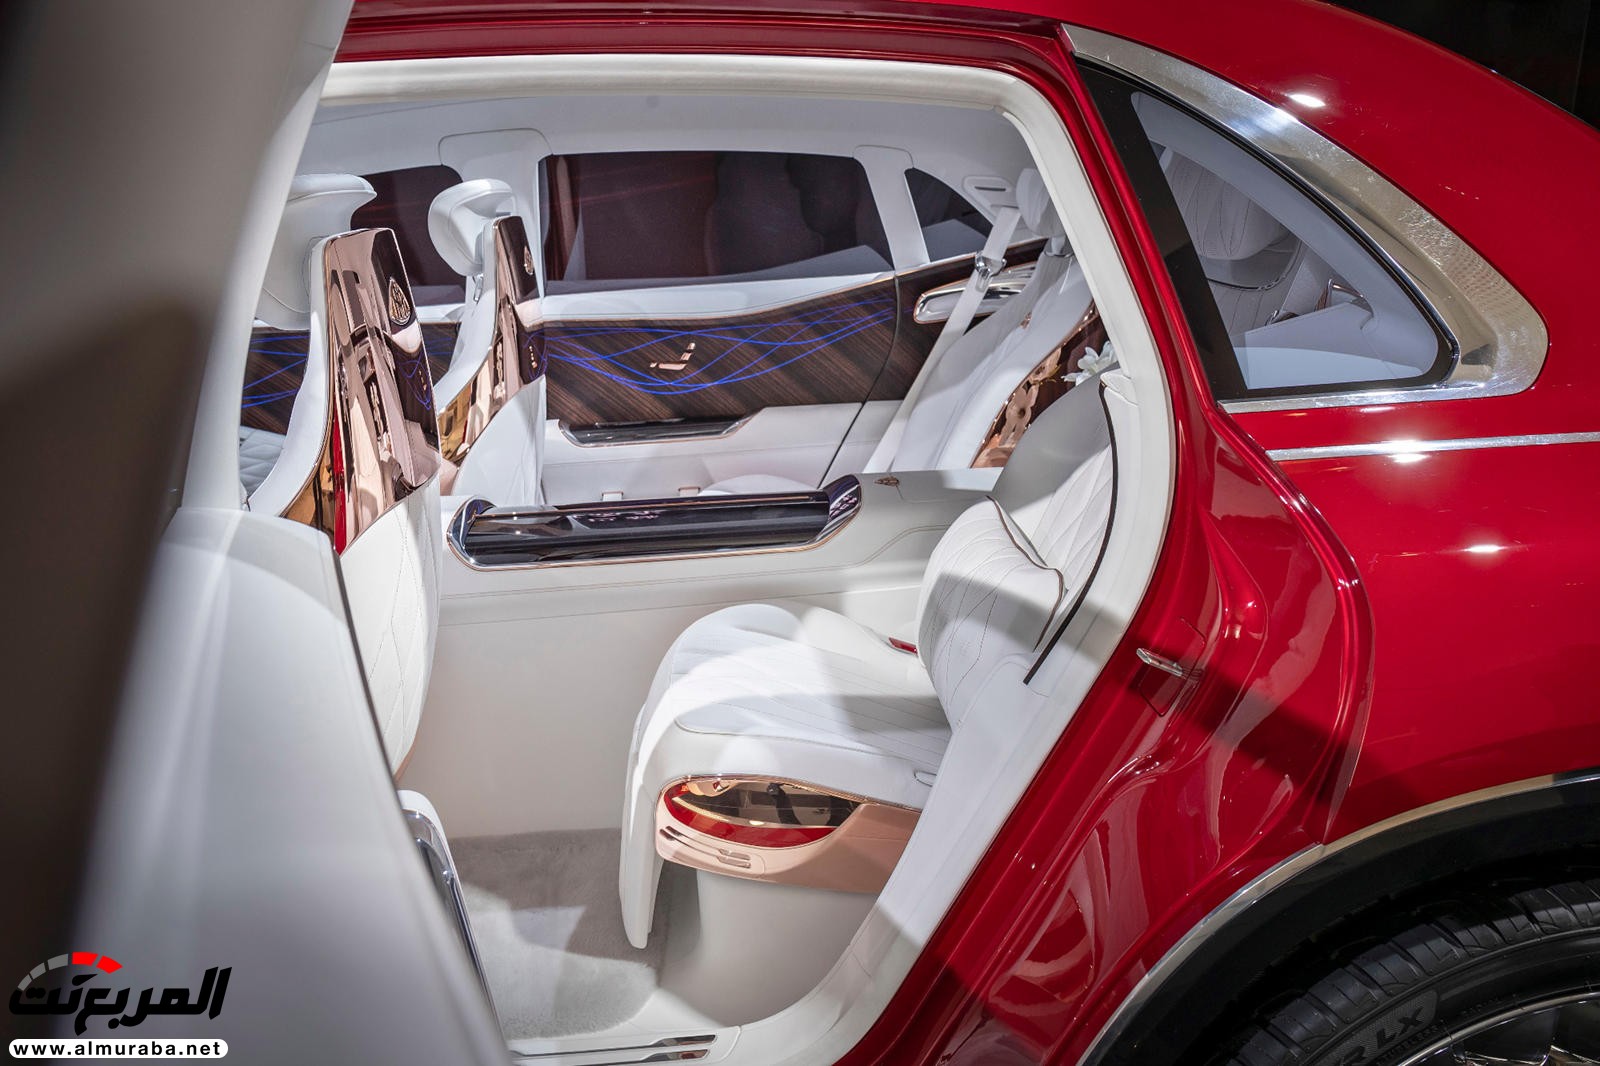 "بالصور" نظرة على مرسيدس مايباخ SUV الاختبارية وفخامتها الداخلية والخارجية 80